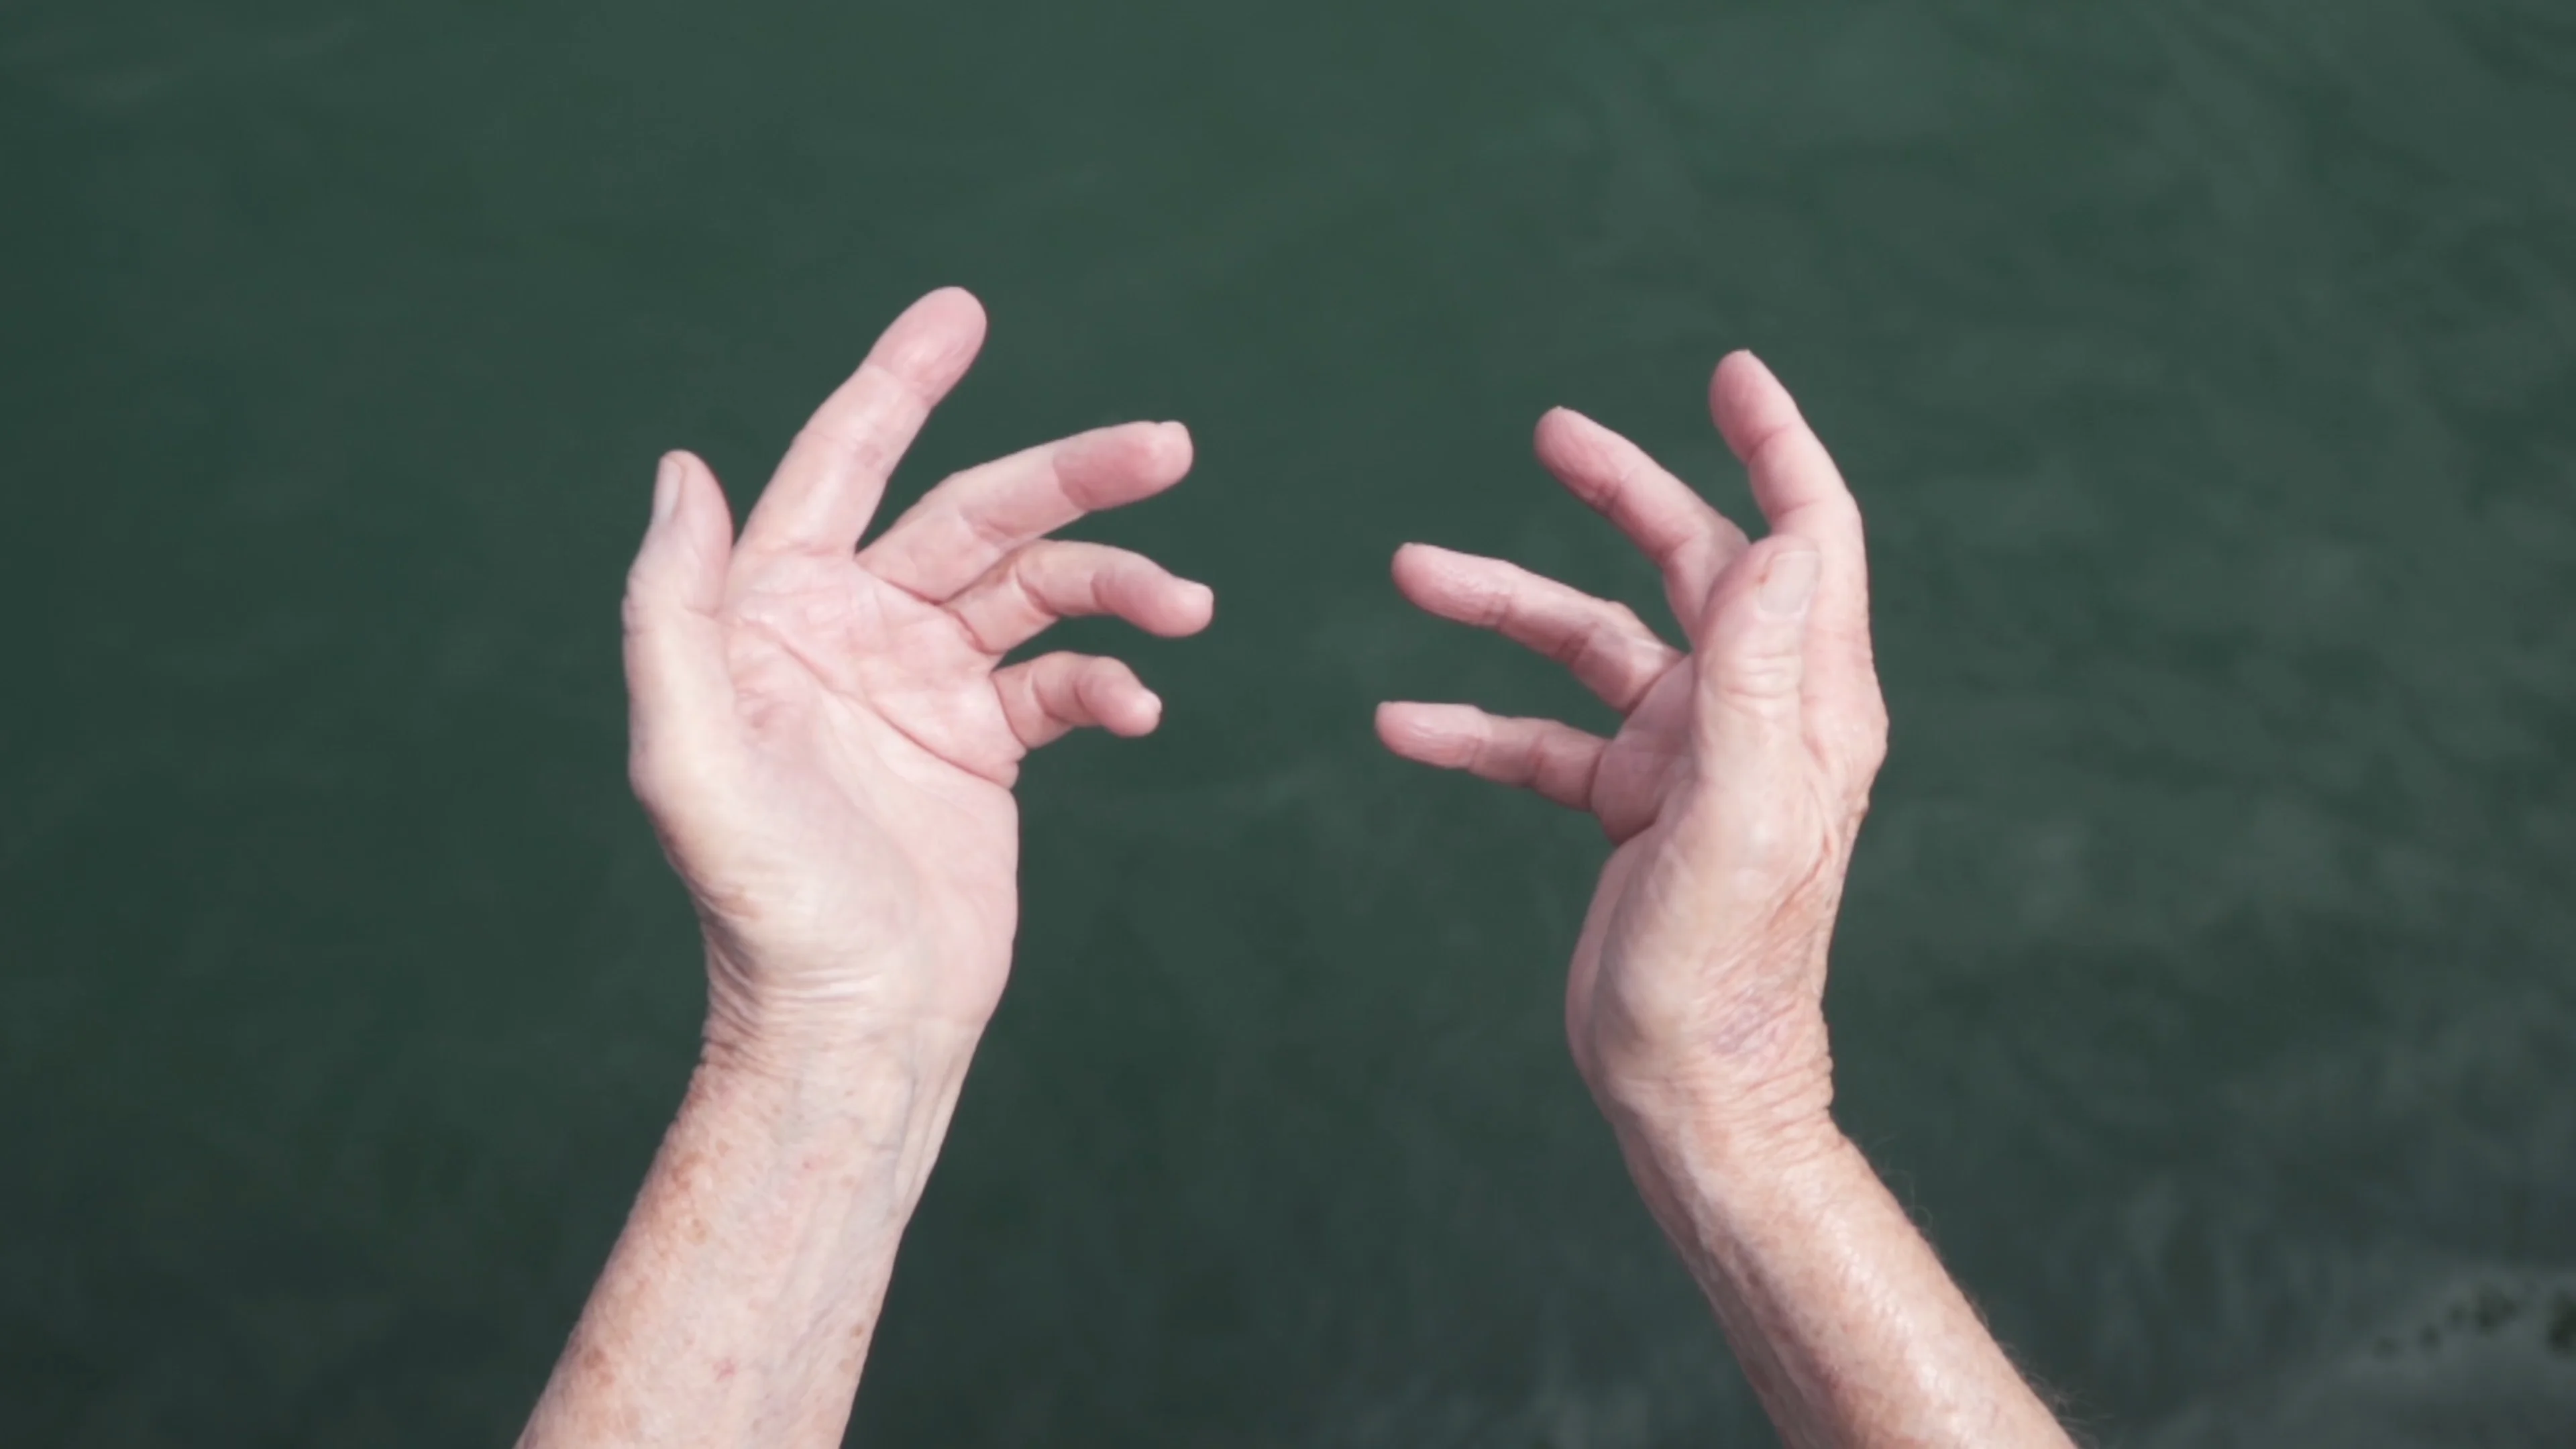 HEALING HANDS/ a film about the art of healing